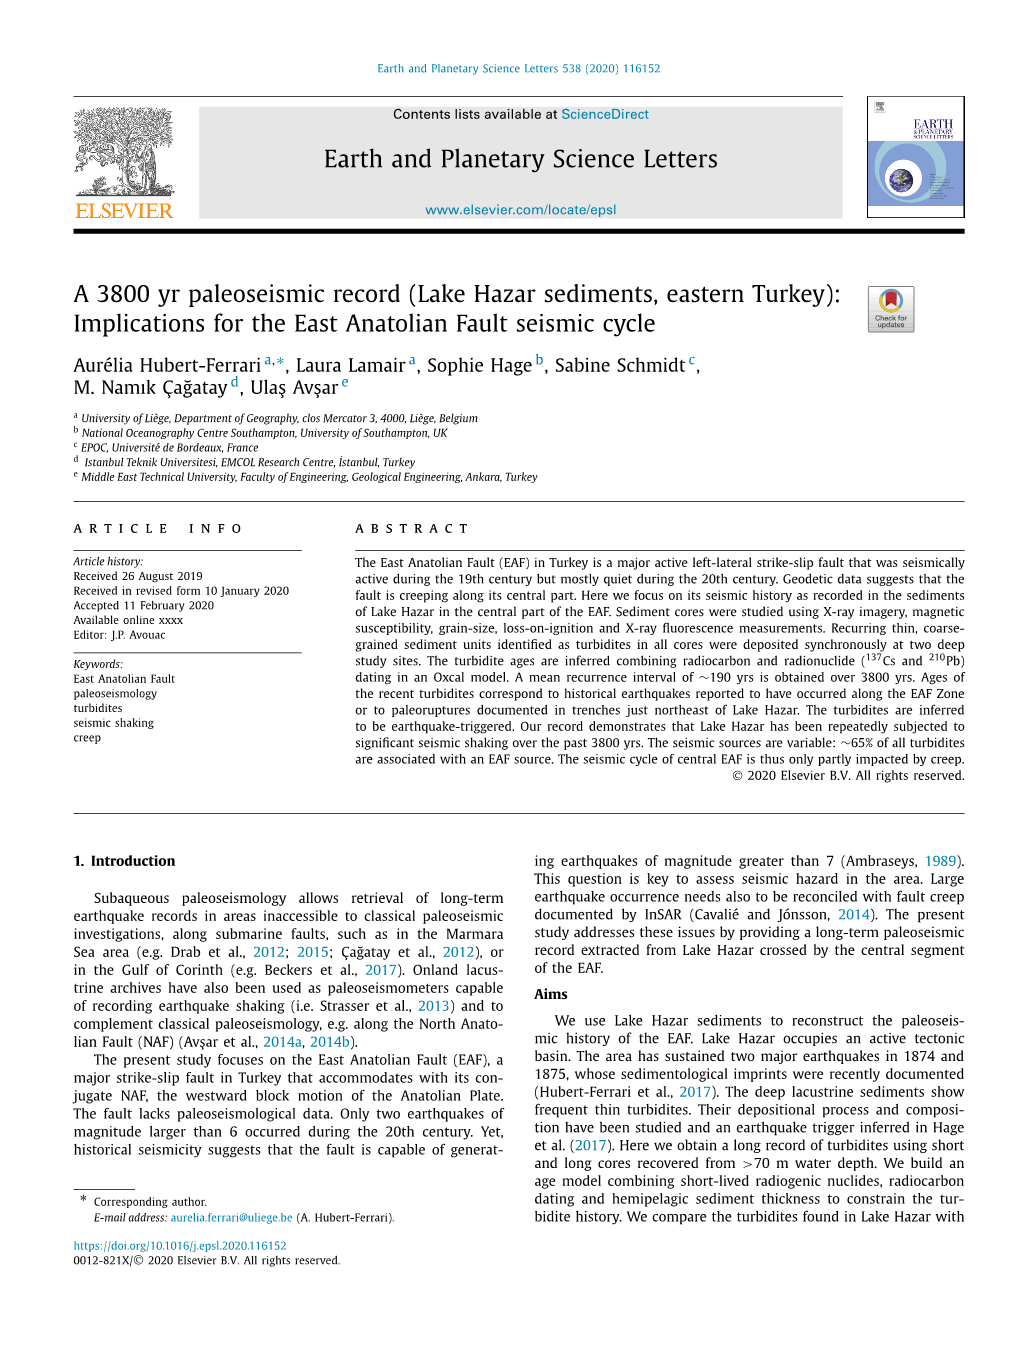 A 3800 Yr Paleoseismic Record (Lake Hazar Sediments, Eastern Turkey